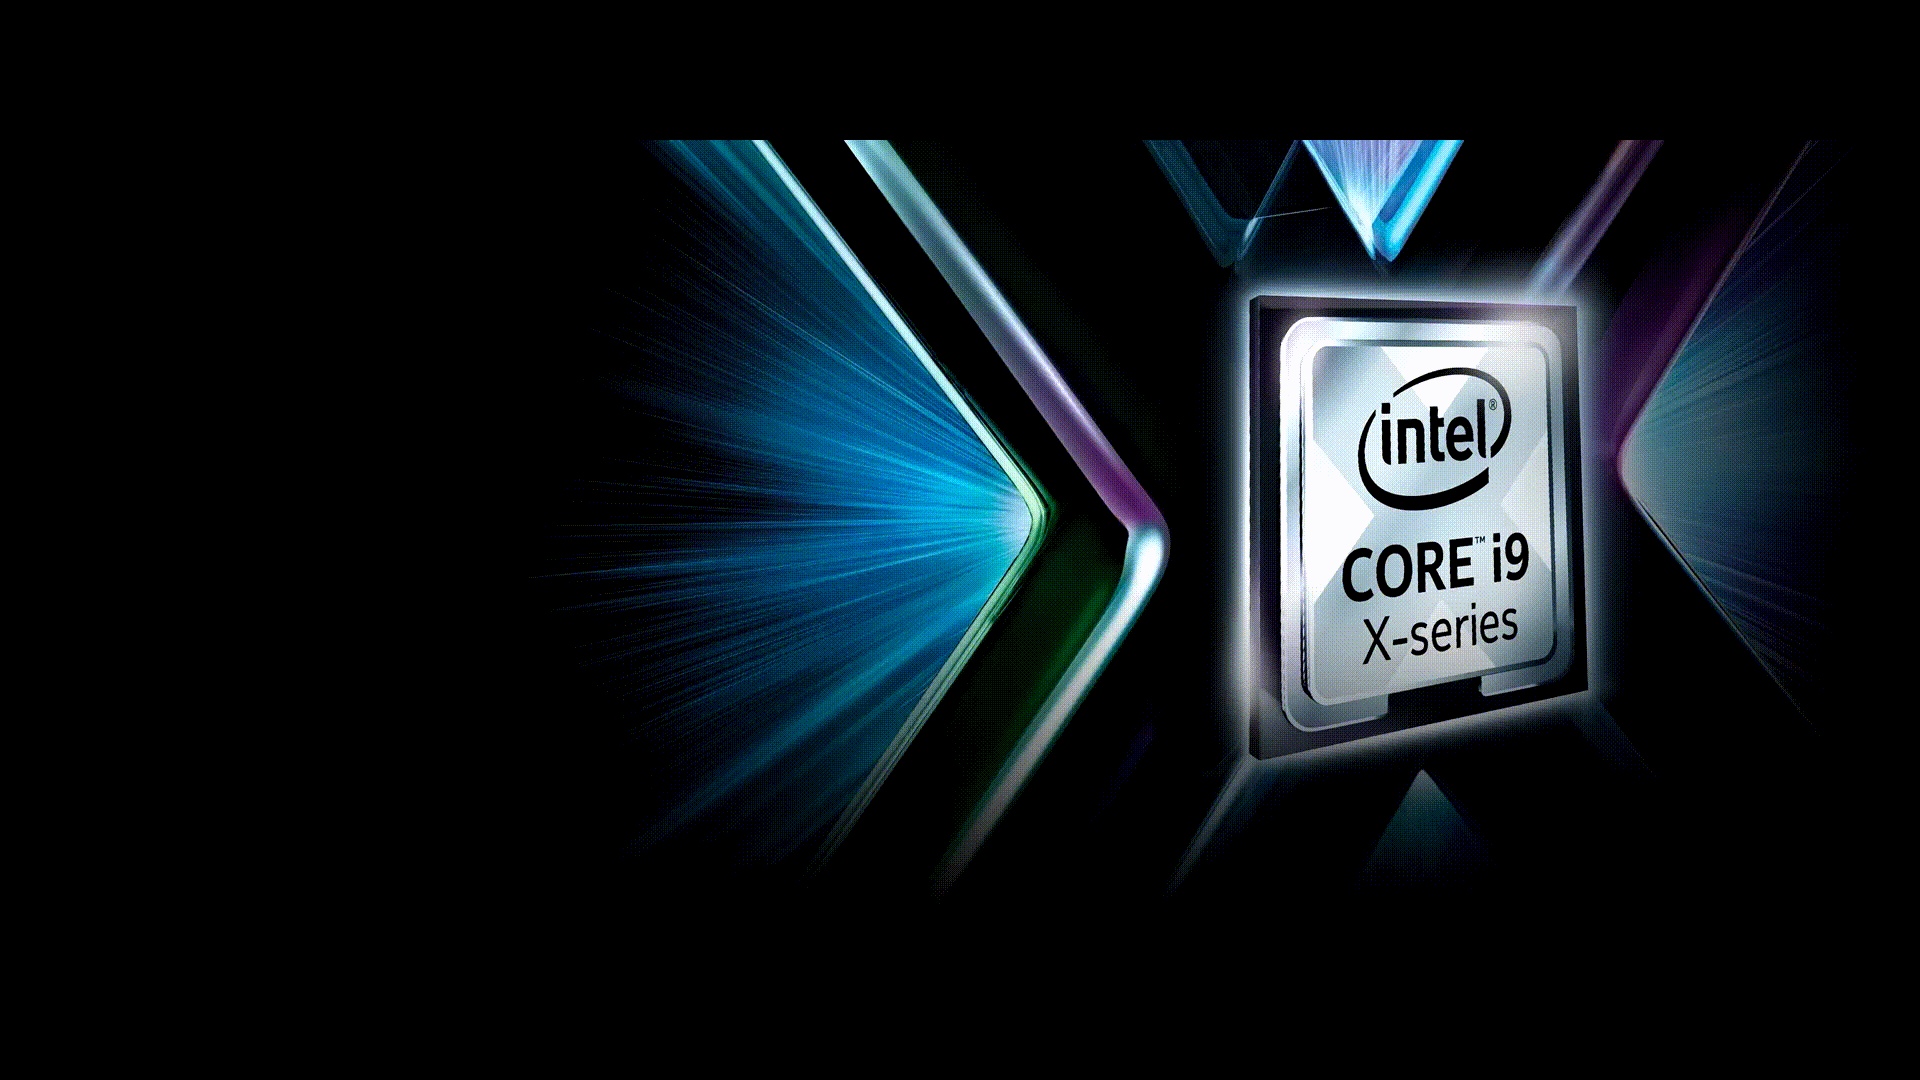 Интел е. Intel Core i9-9900kf. Intel Core i9 9900kf x Series. Intel Core i7-9700kf. Intel Core i9-11900kf.